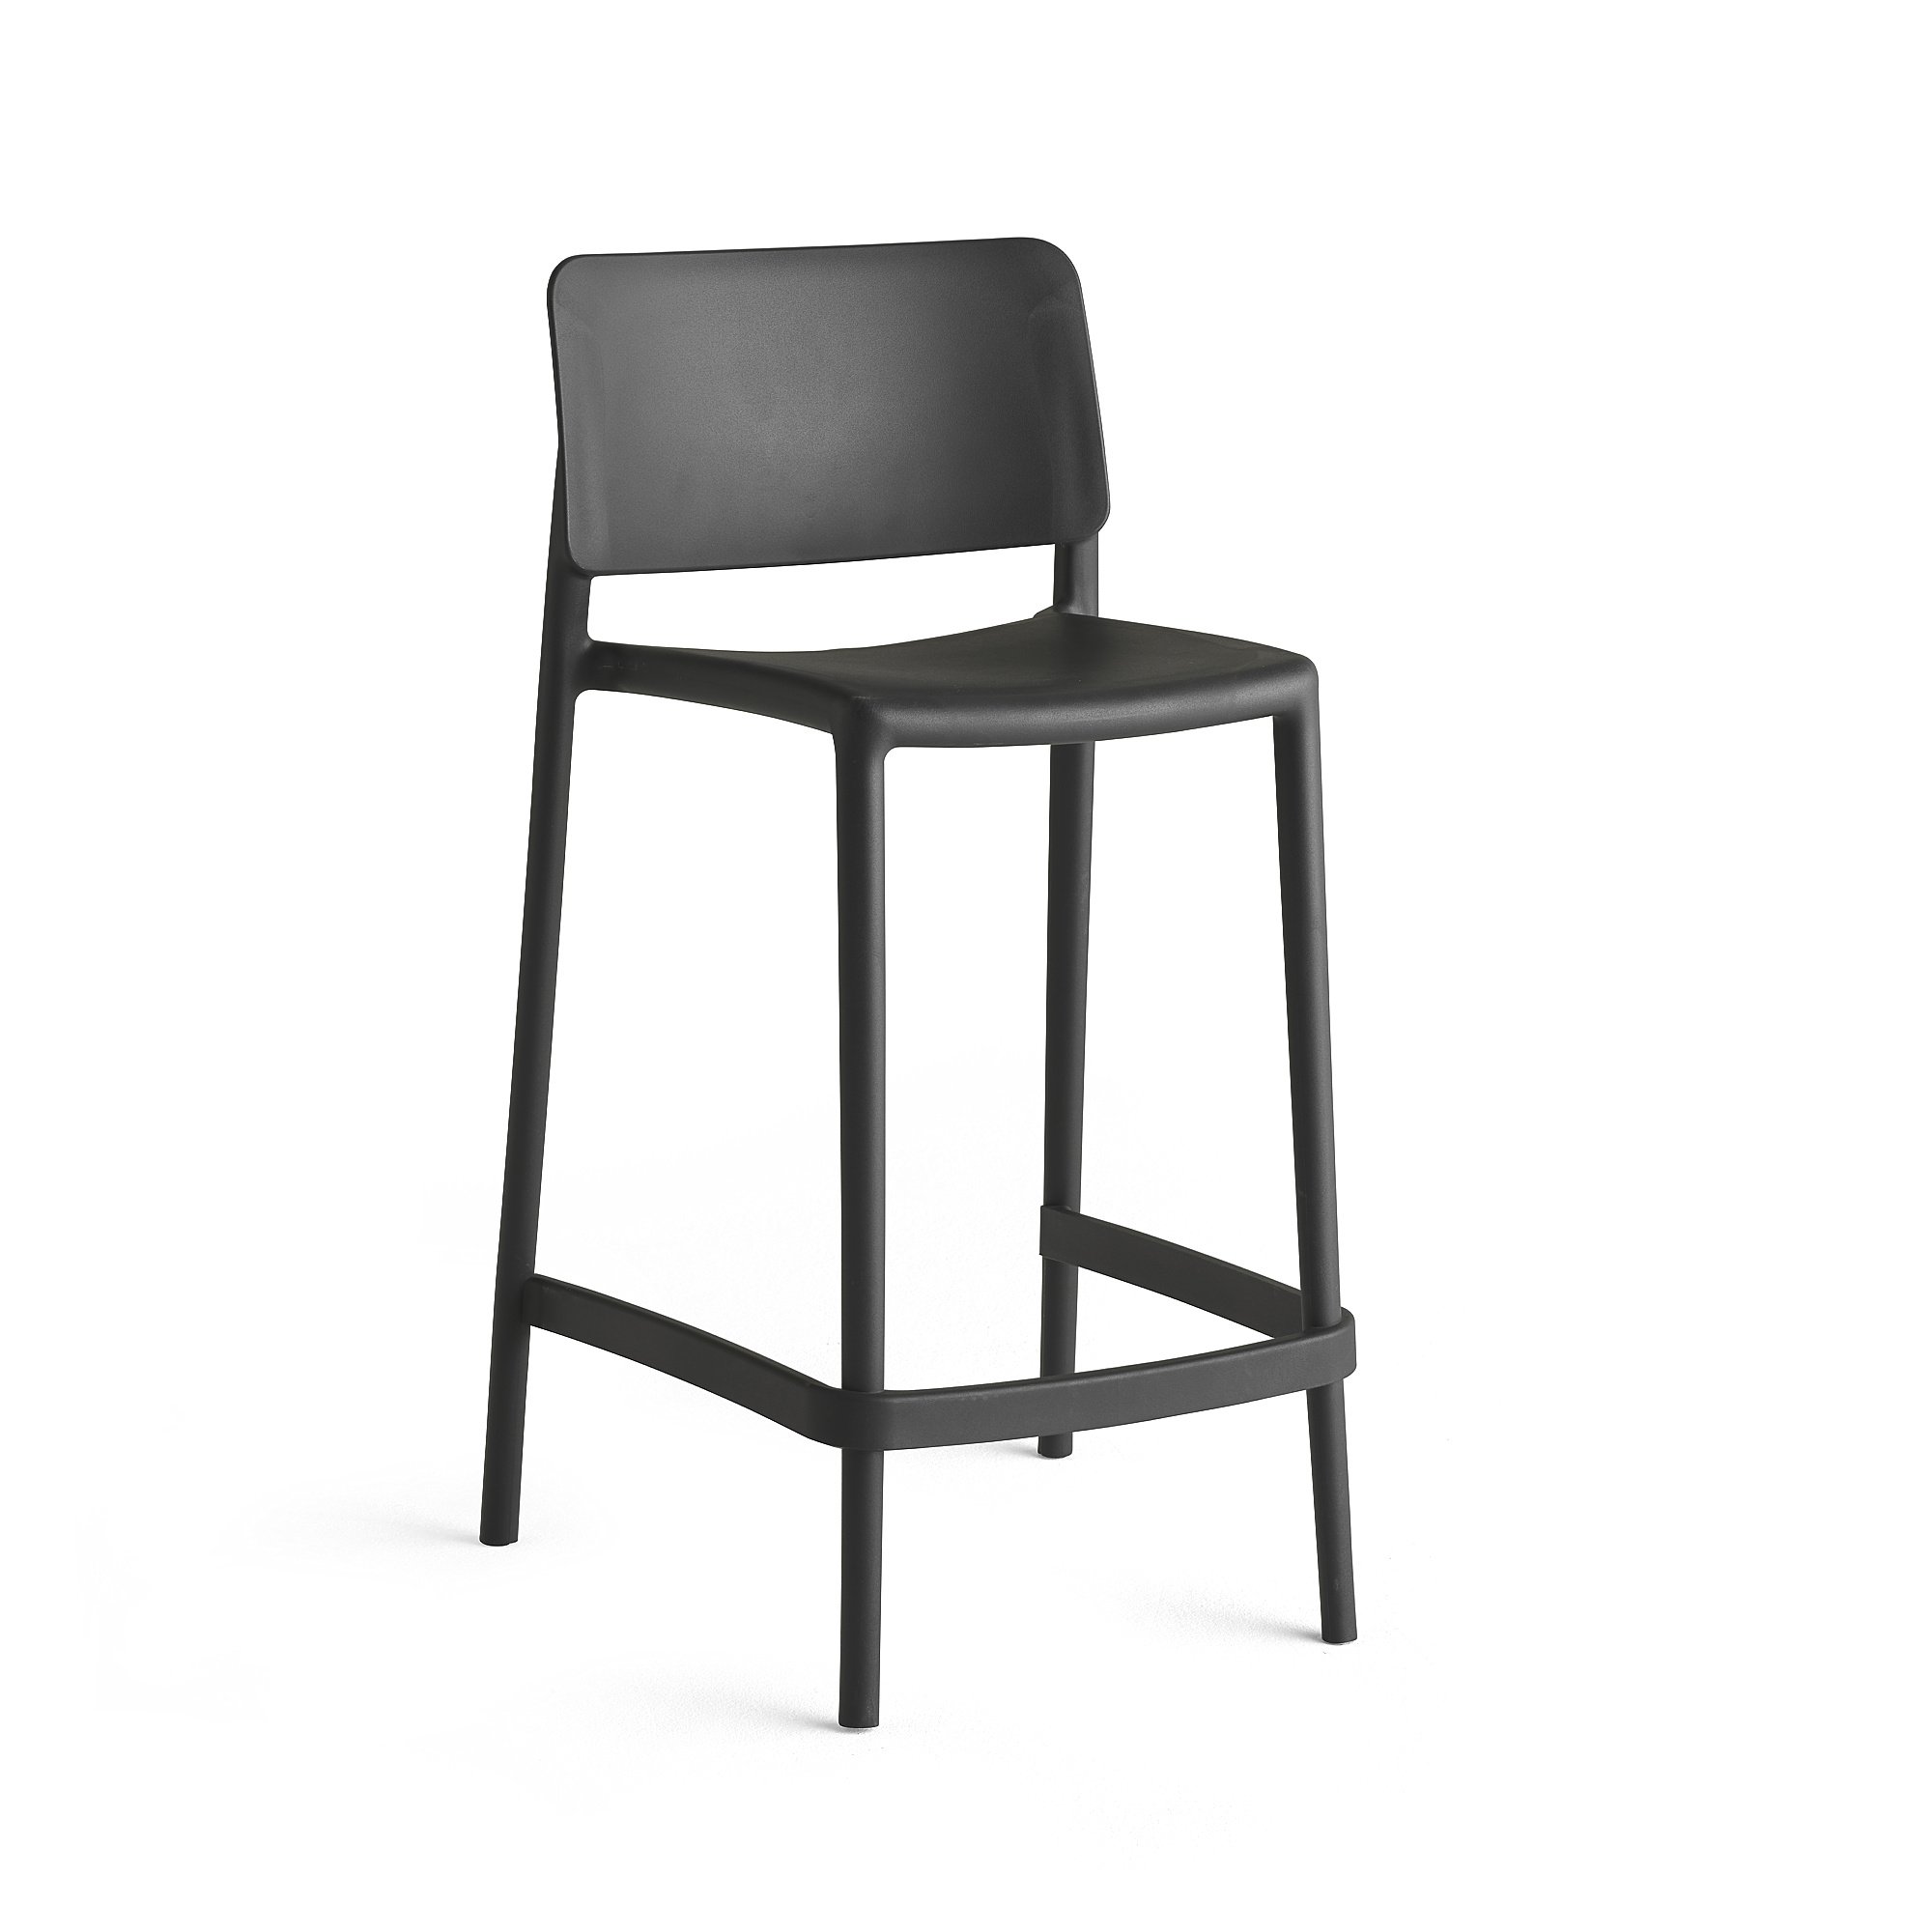 Barová židle RIO, výška sedáku 650 mm, tmavě šedá